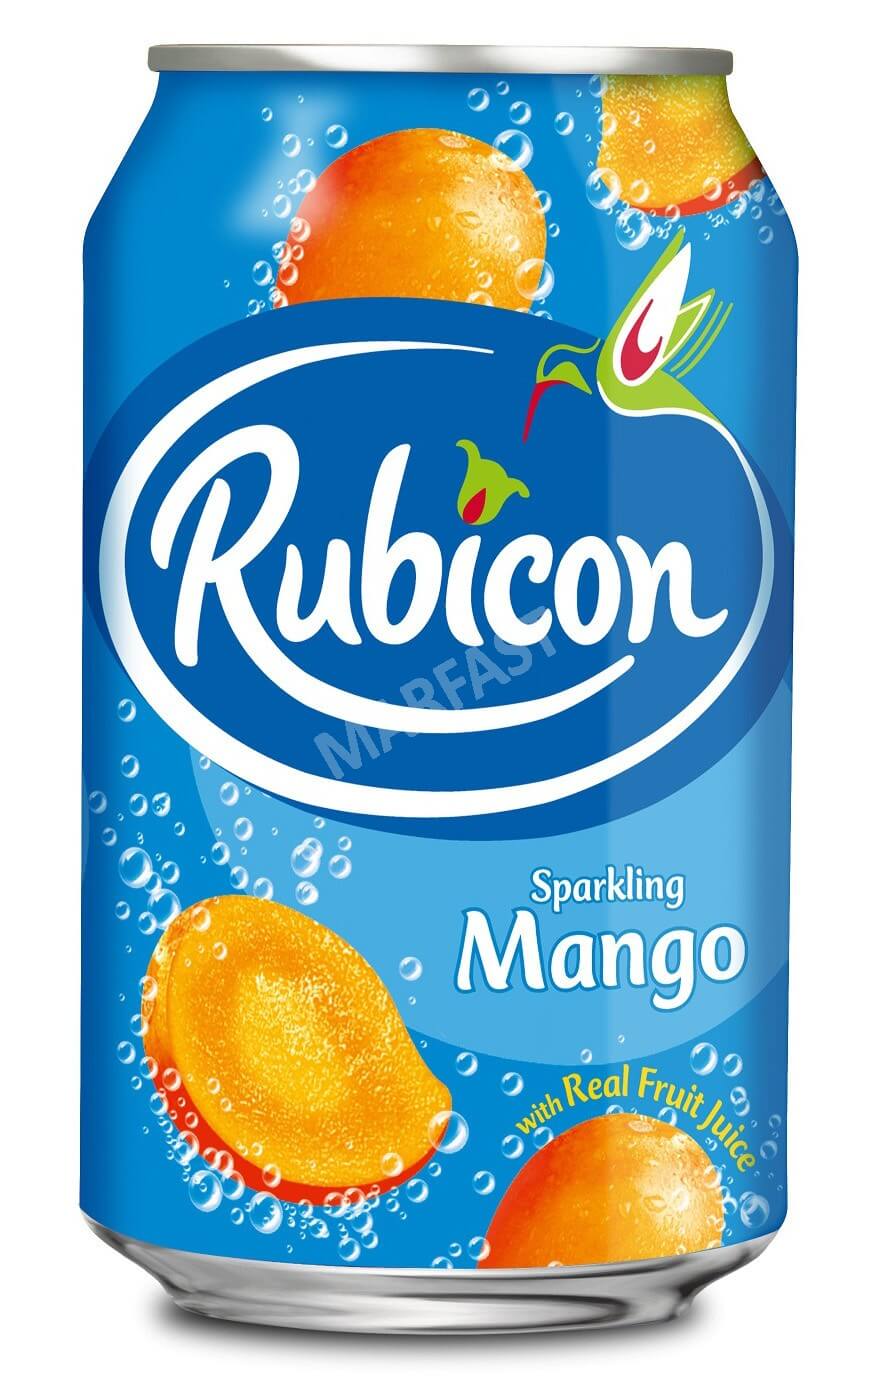 Rubicon Mango 330ml